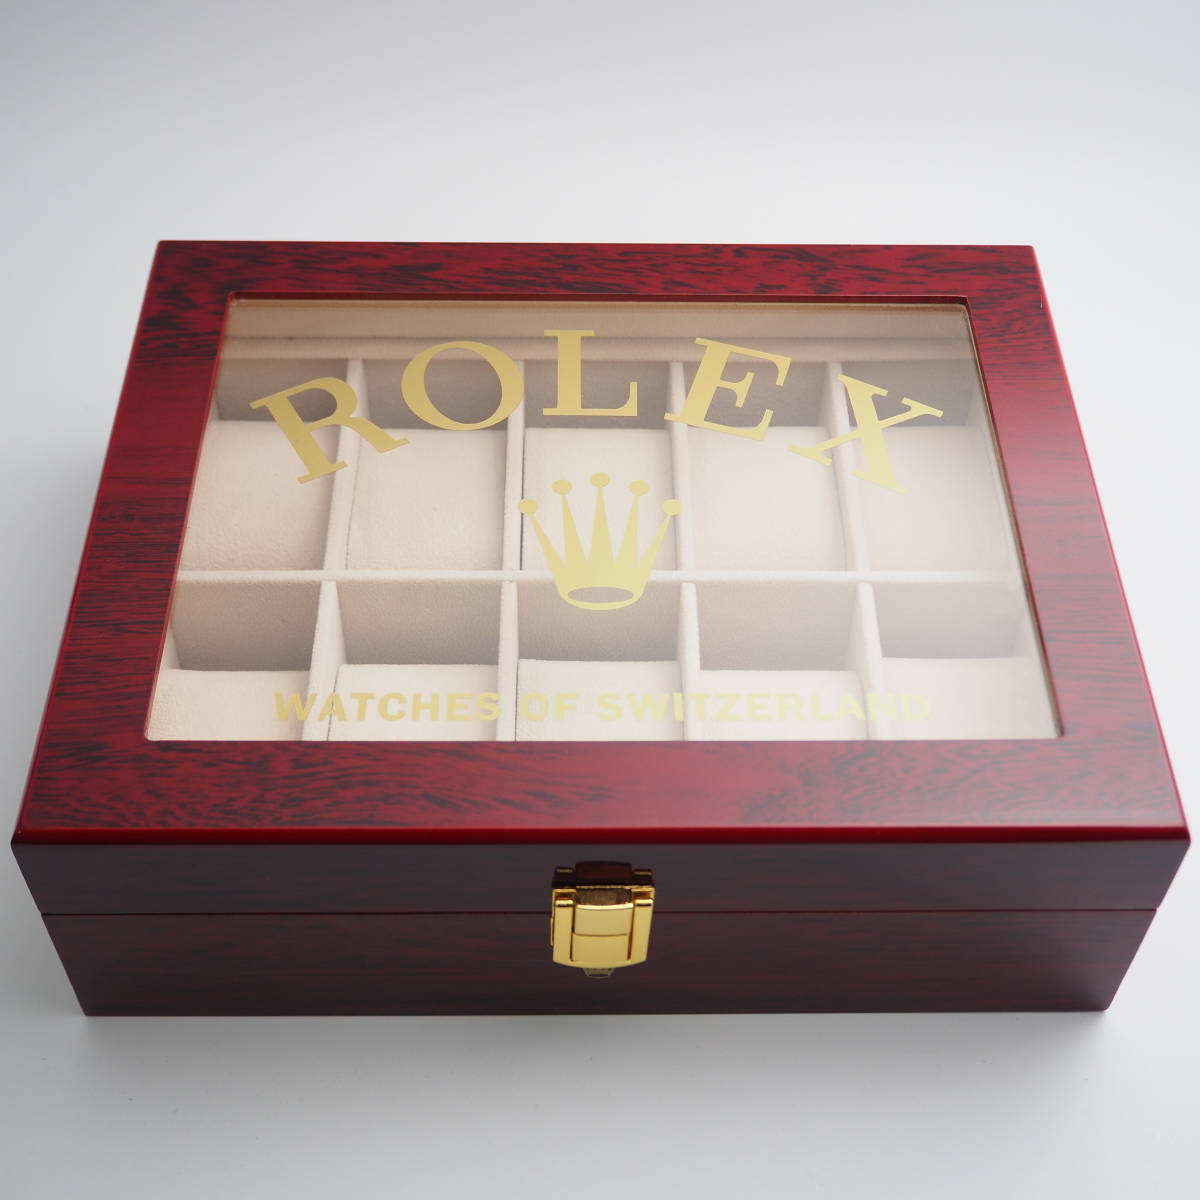 ROLEX ディスプレイケース 10本収納 68 00 2 ロレックス ボックス 時計 